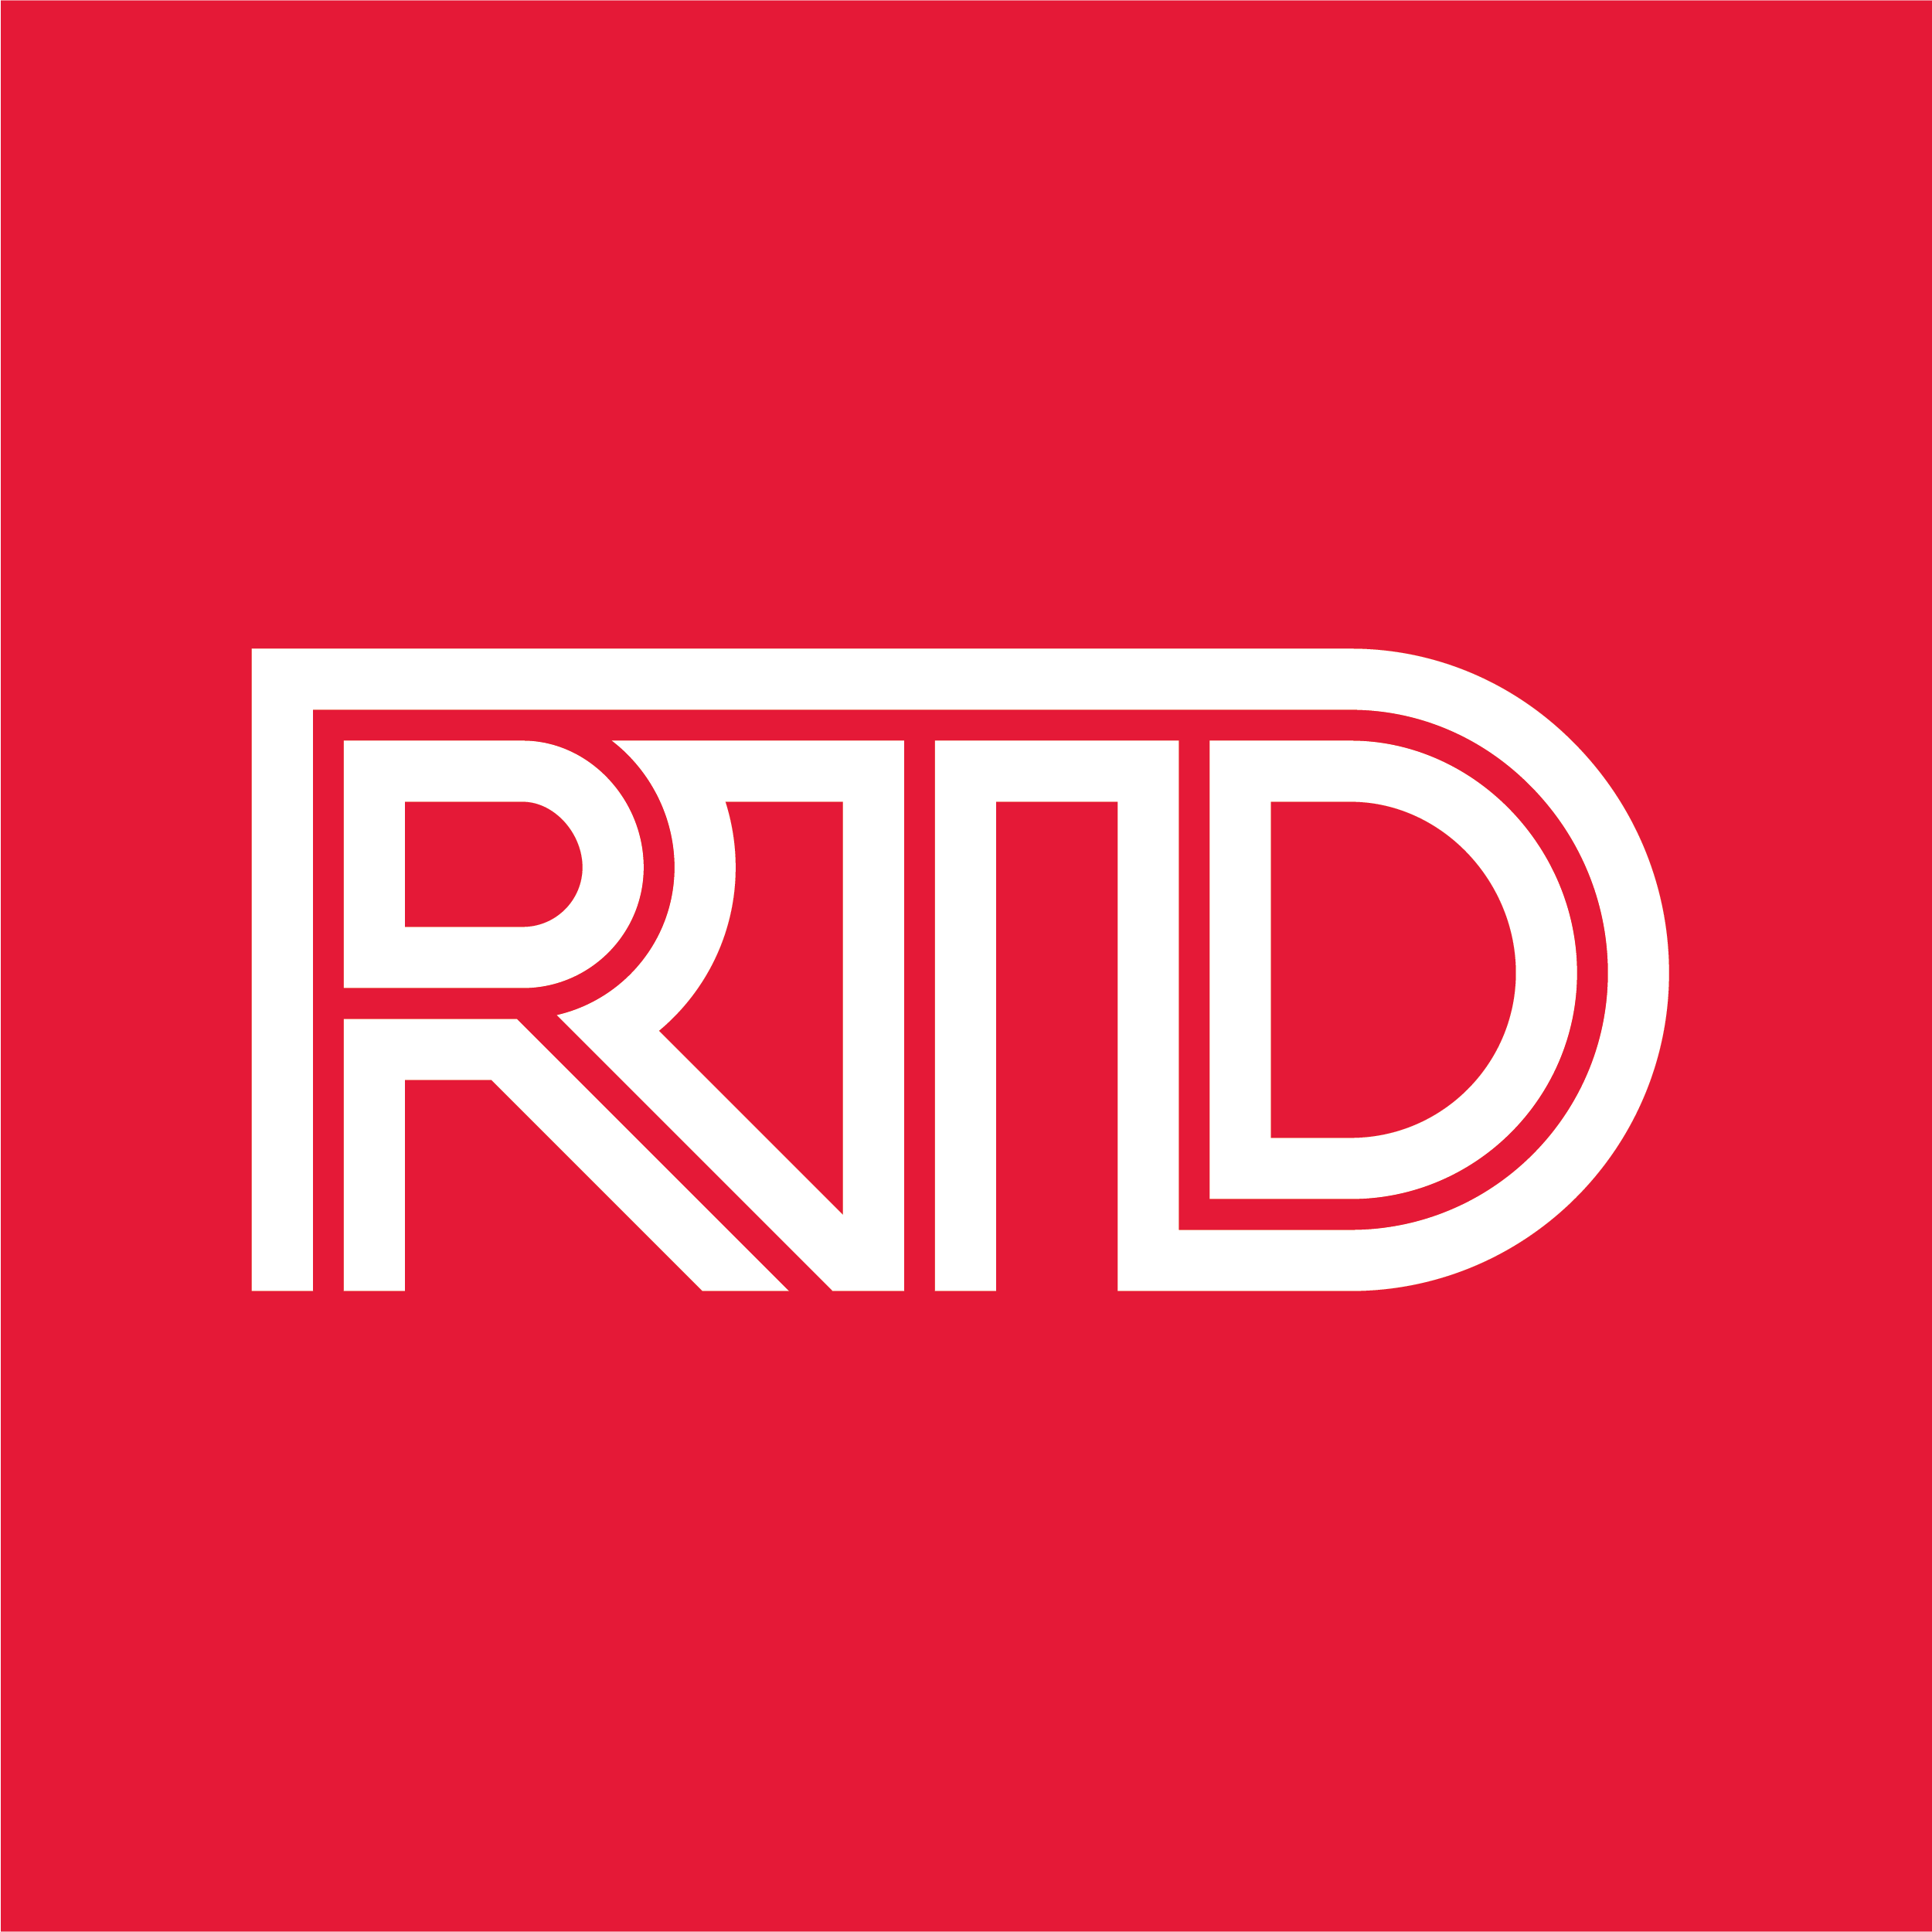 RTD_logo_cmyk_c_red.png detail image